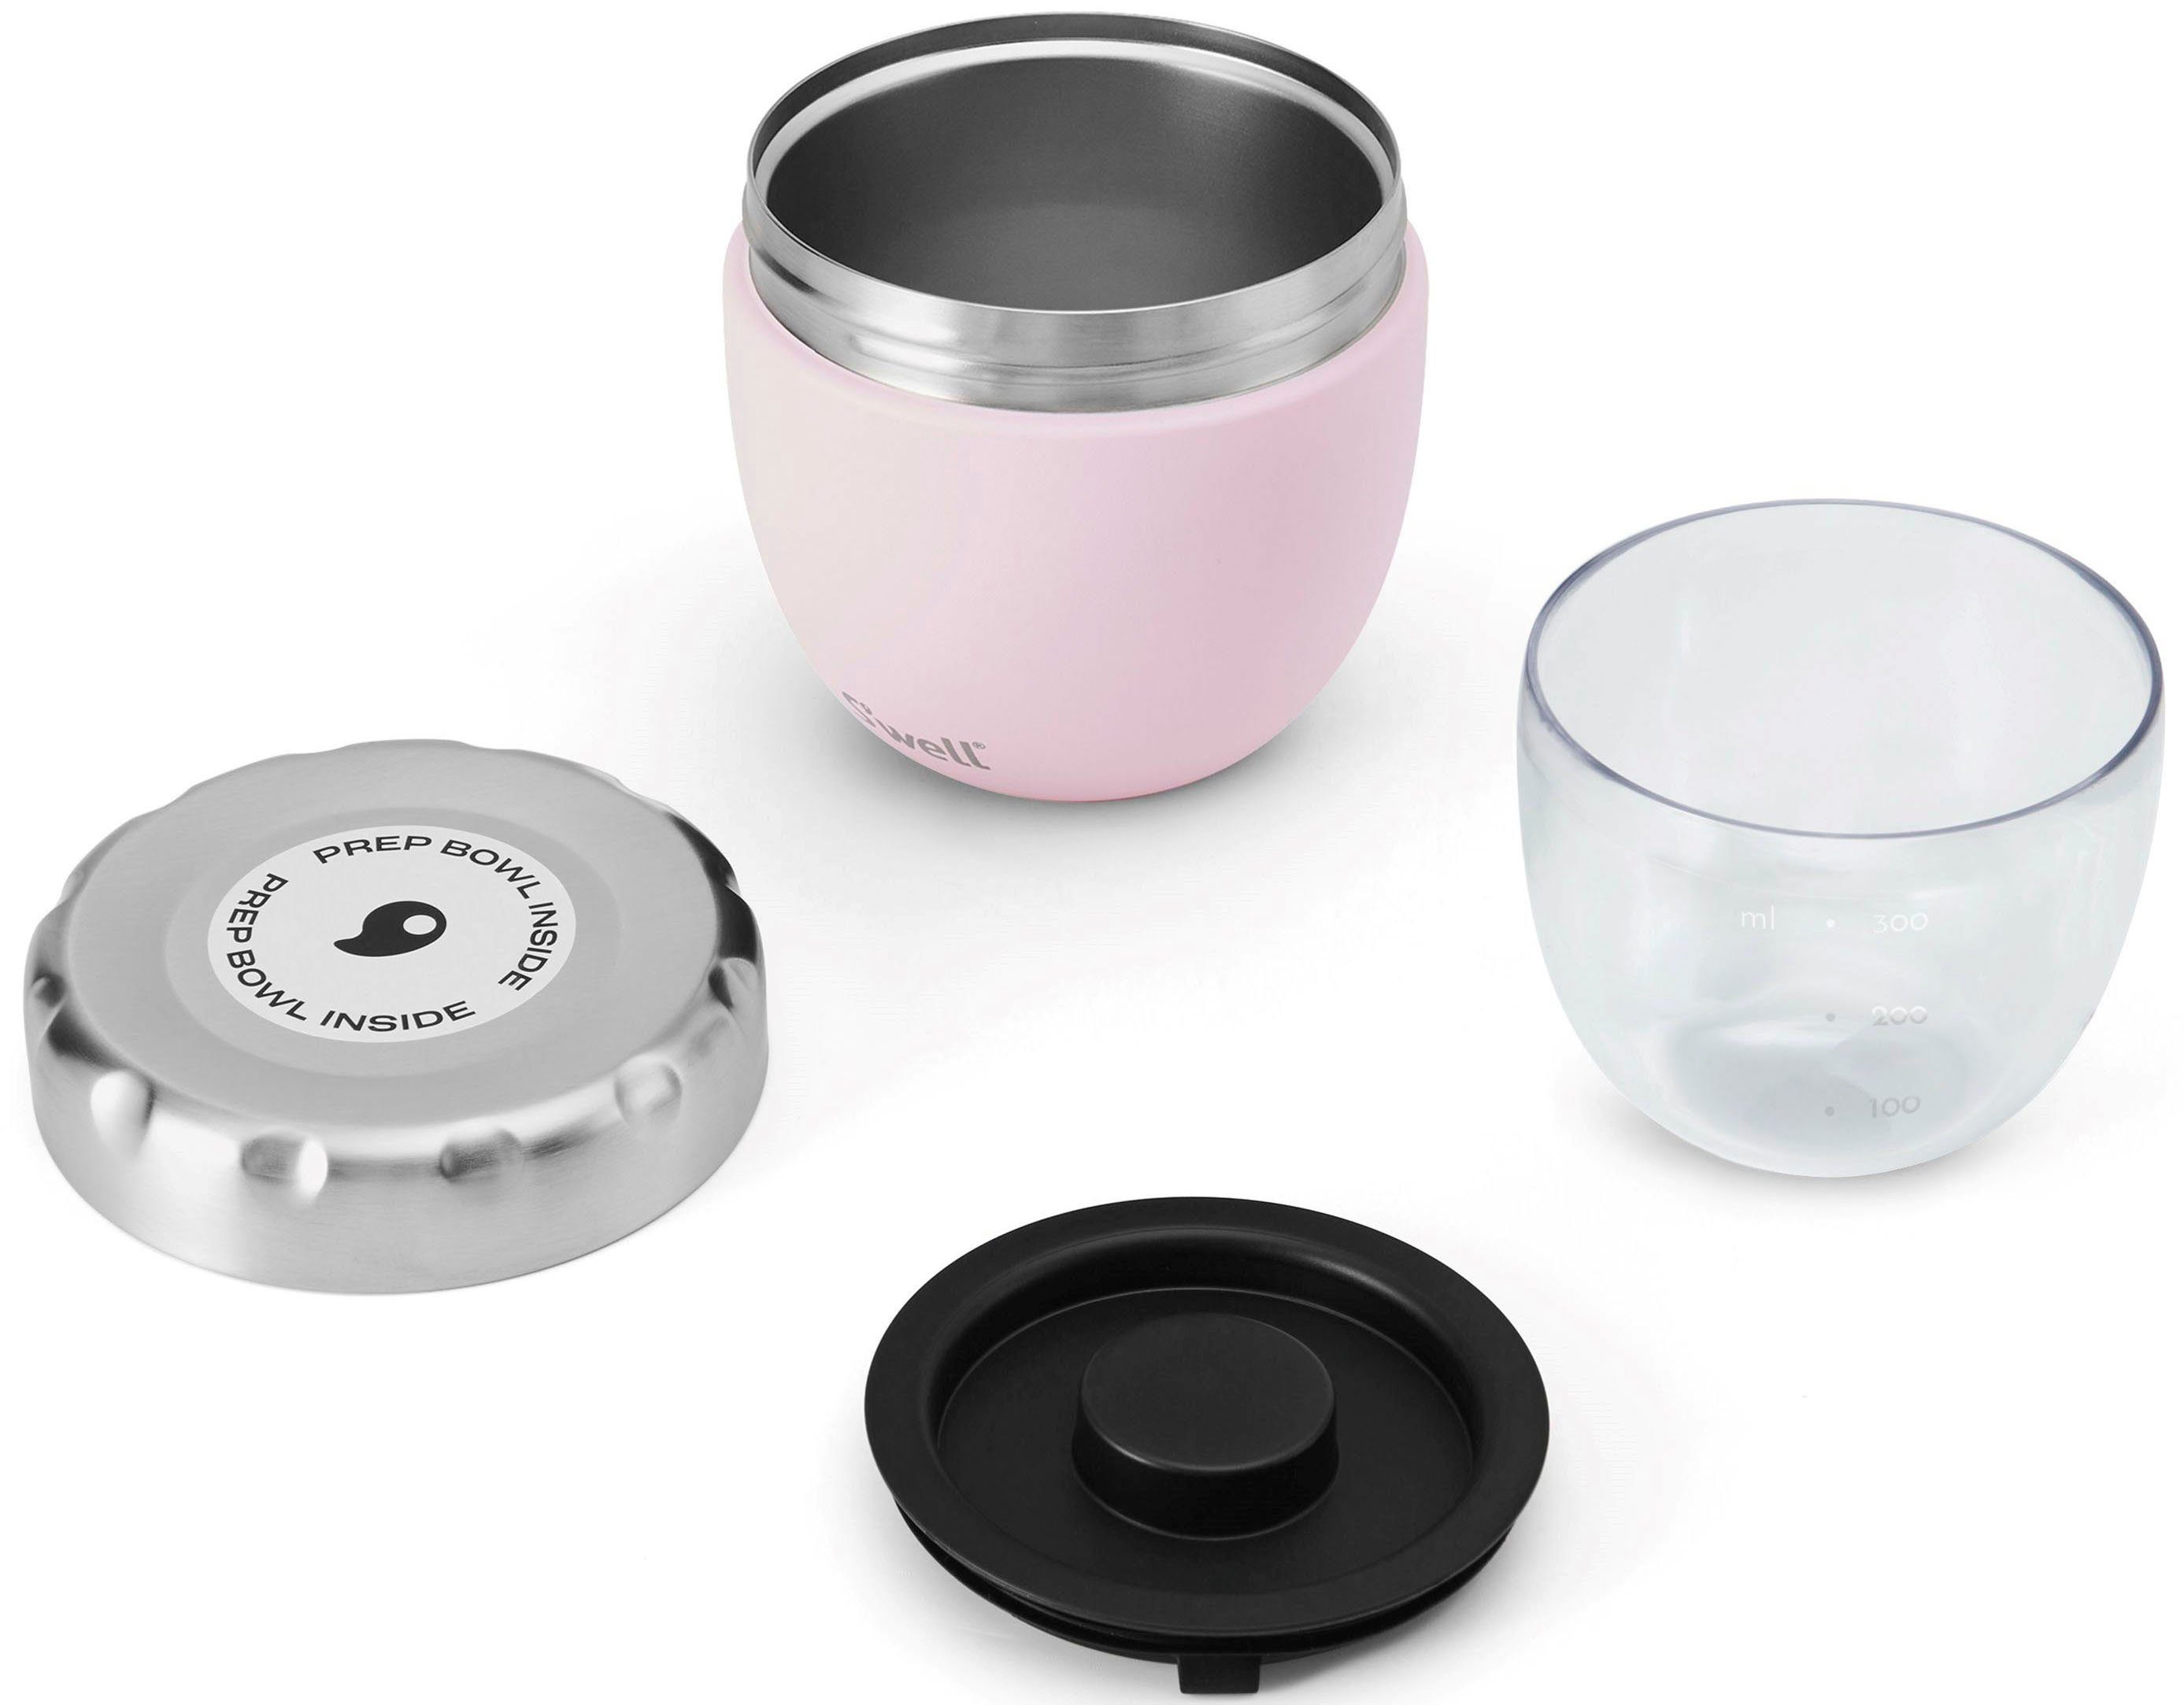 S'well Thermoschüssel S’well Therma-S'well®-Technologie Edelstahl, Pink mit Eats dreischichtiger Bowl, Topaz 2-in-1 Außenschale Food (2-tlg)